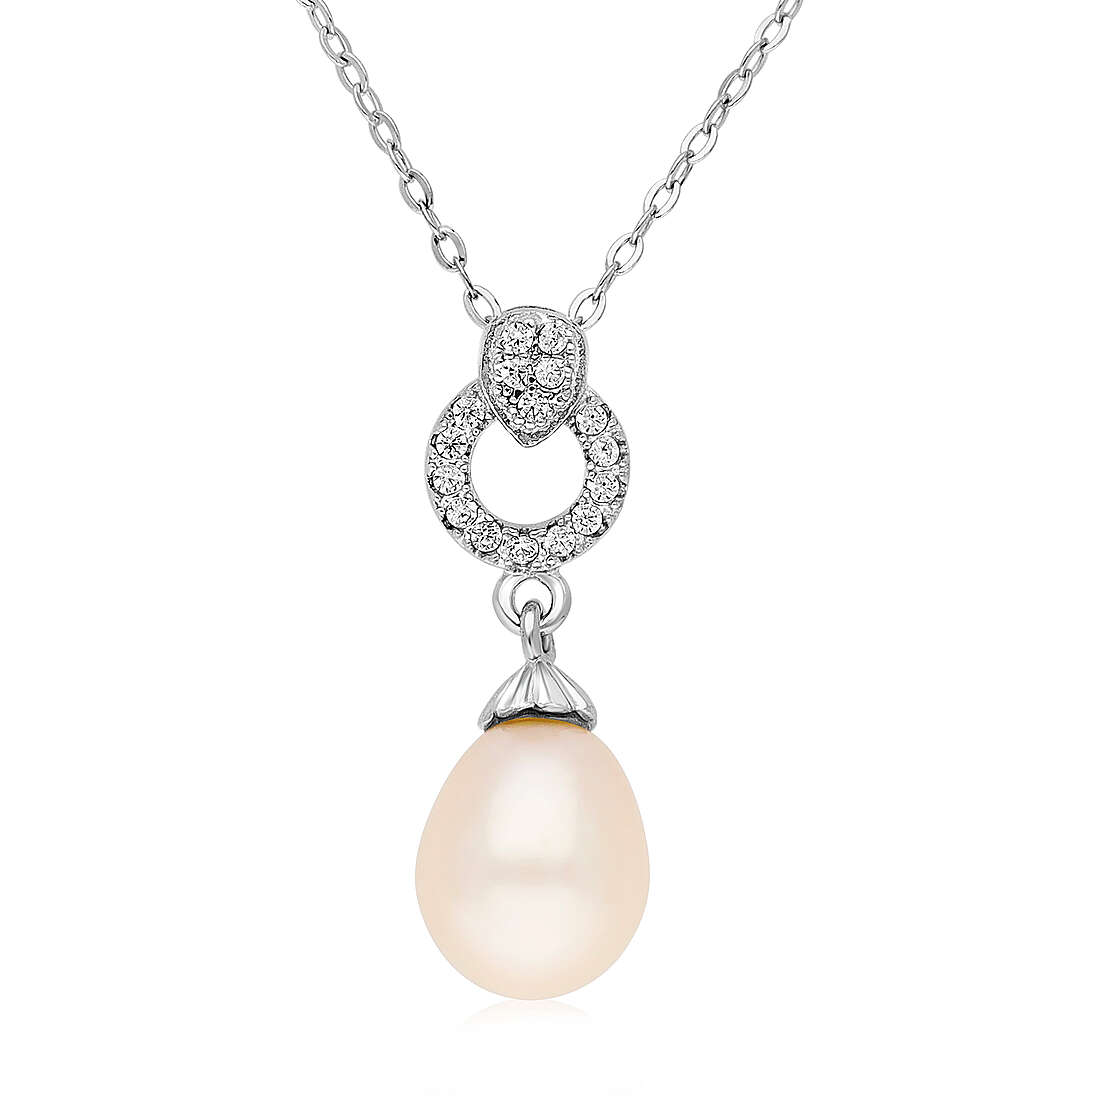 necklace woman jewellery GioiaPura DV-24817332